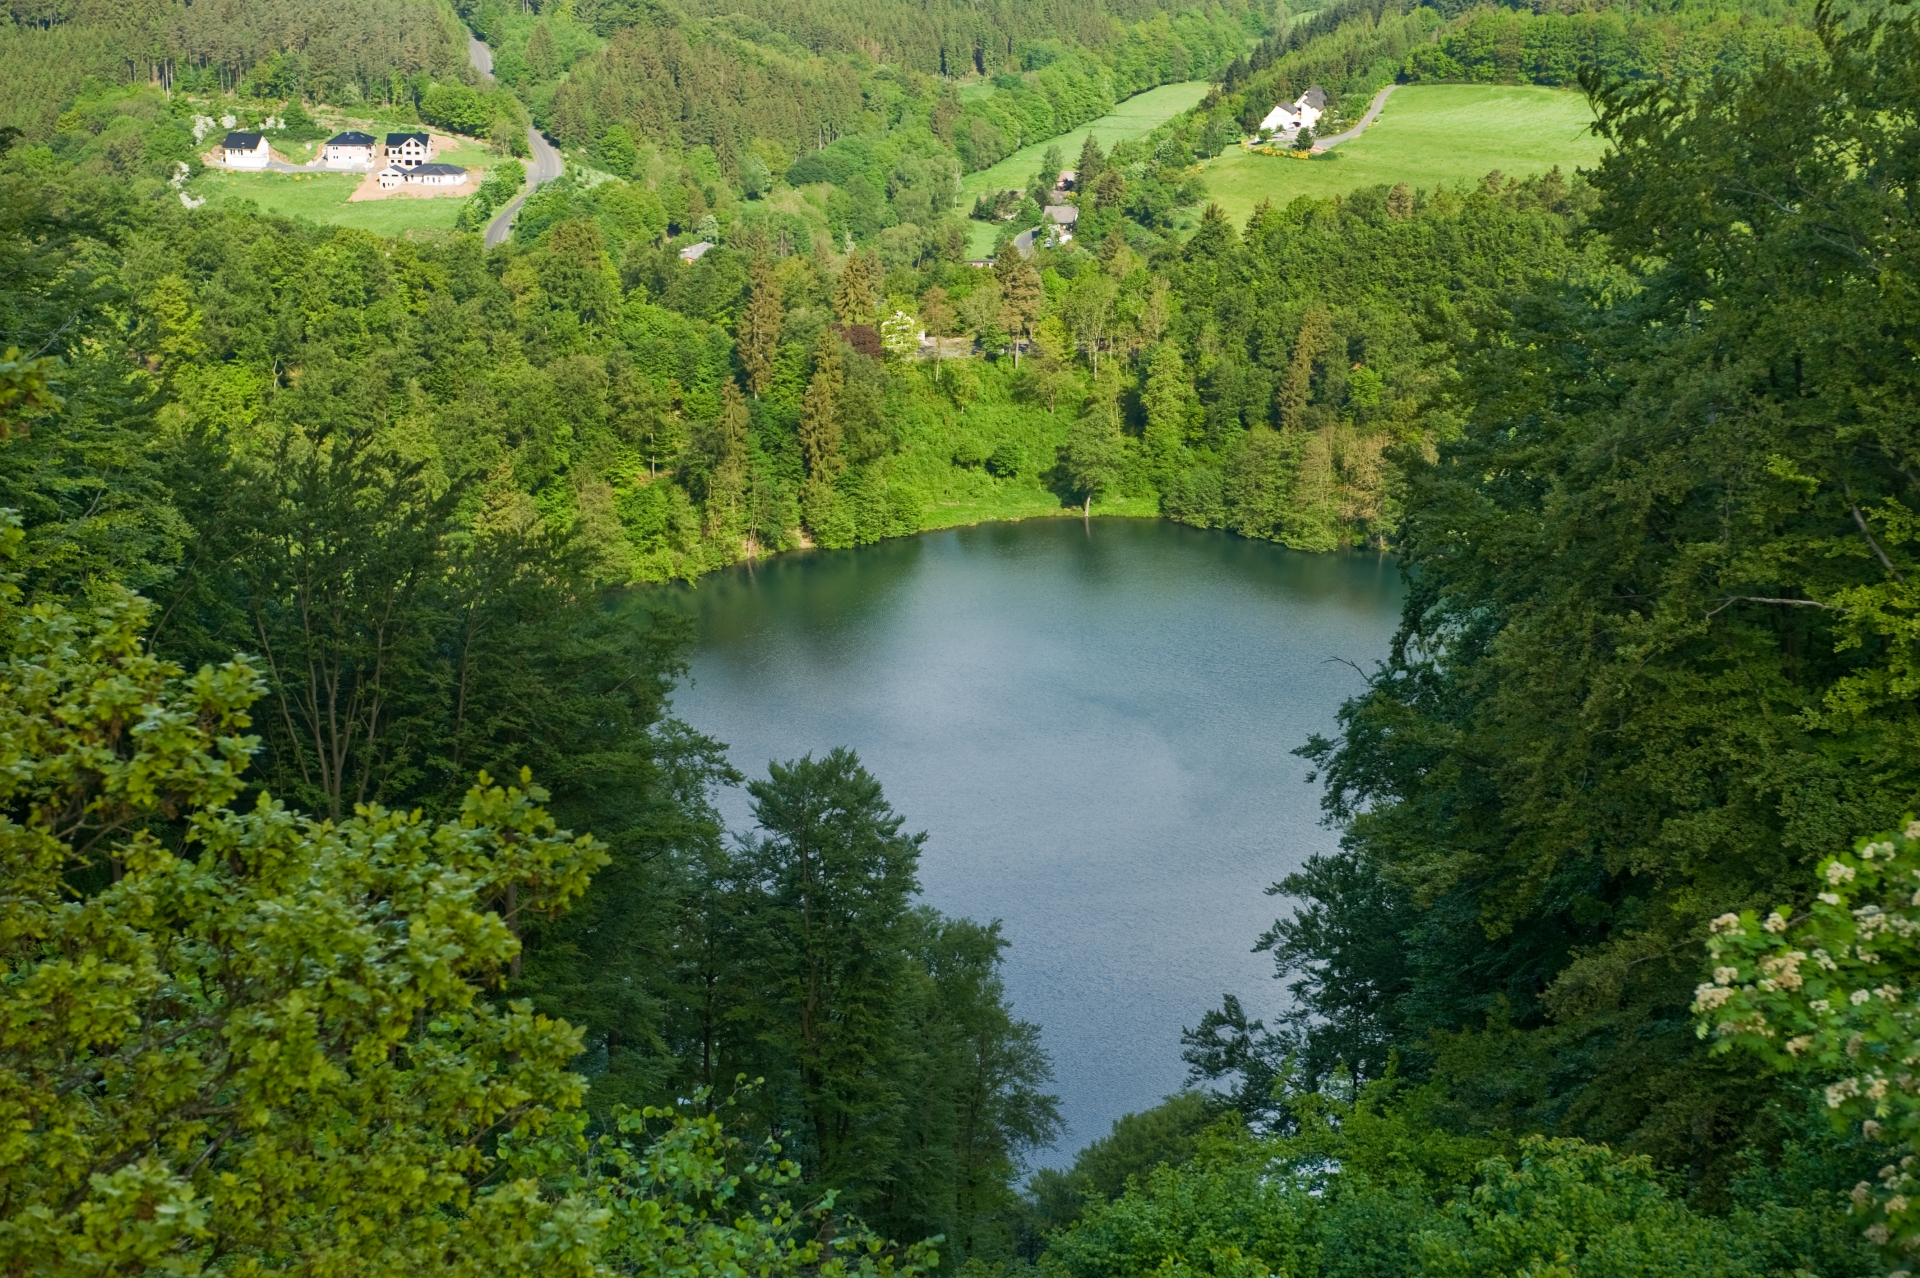 Le Maar de Gemünden au milieu d'un paysage vert et fleuri de l'Eifel.